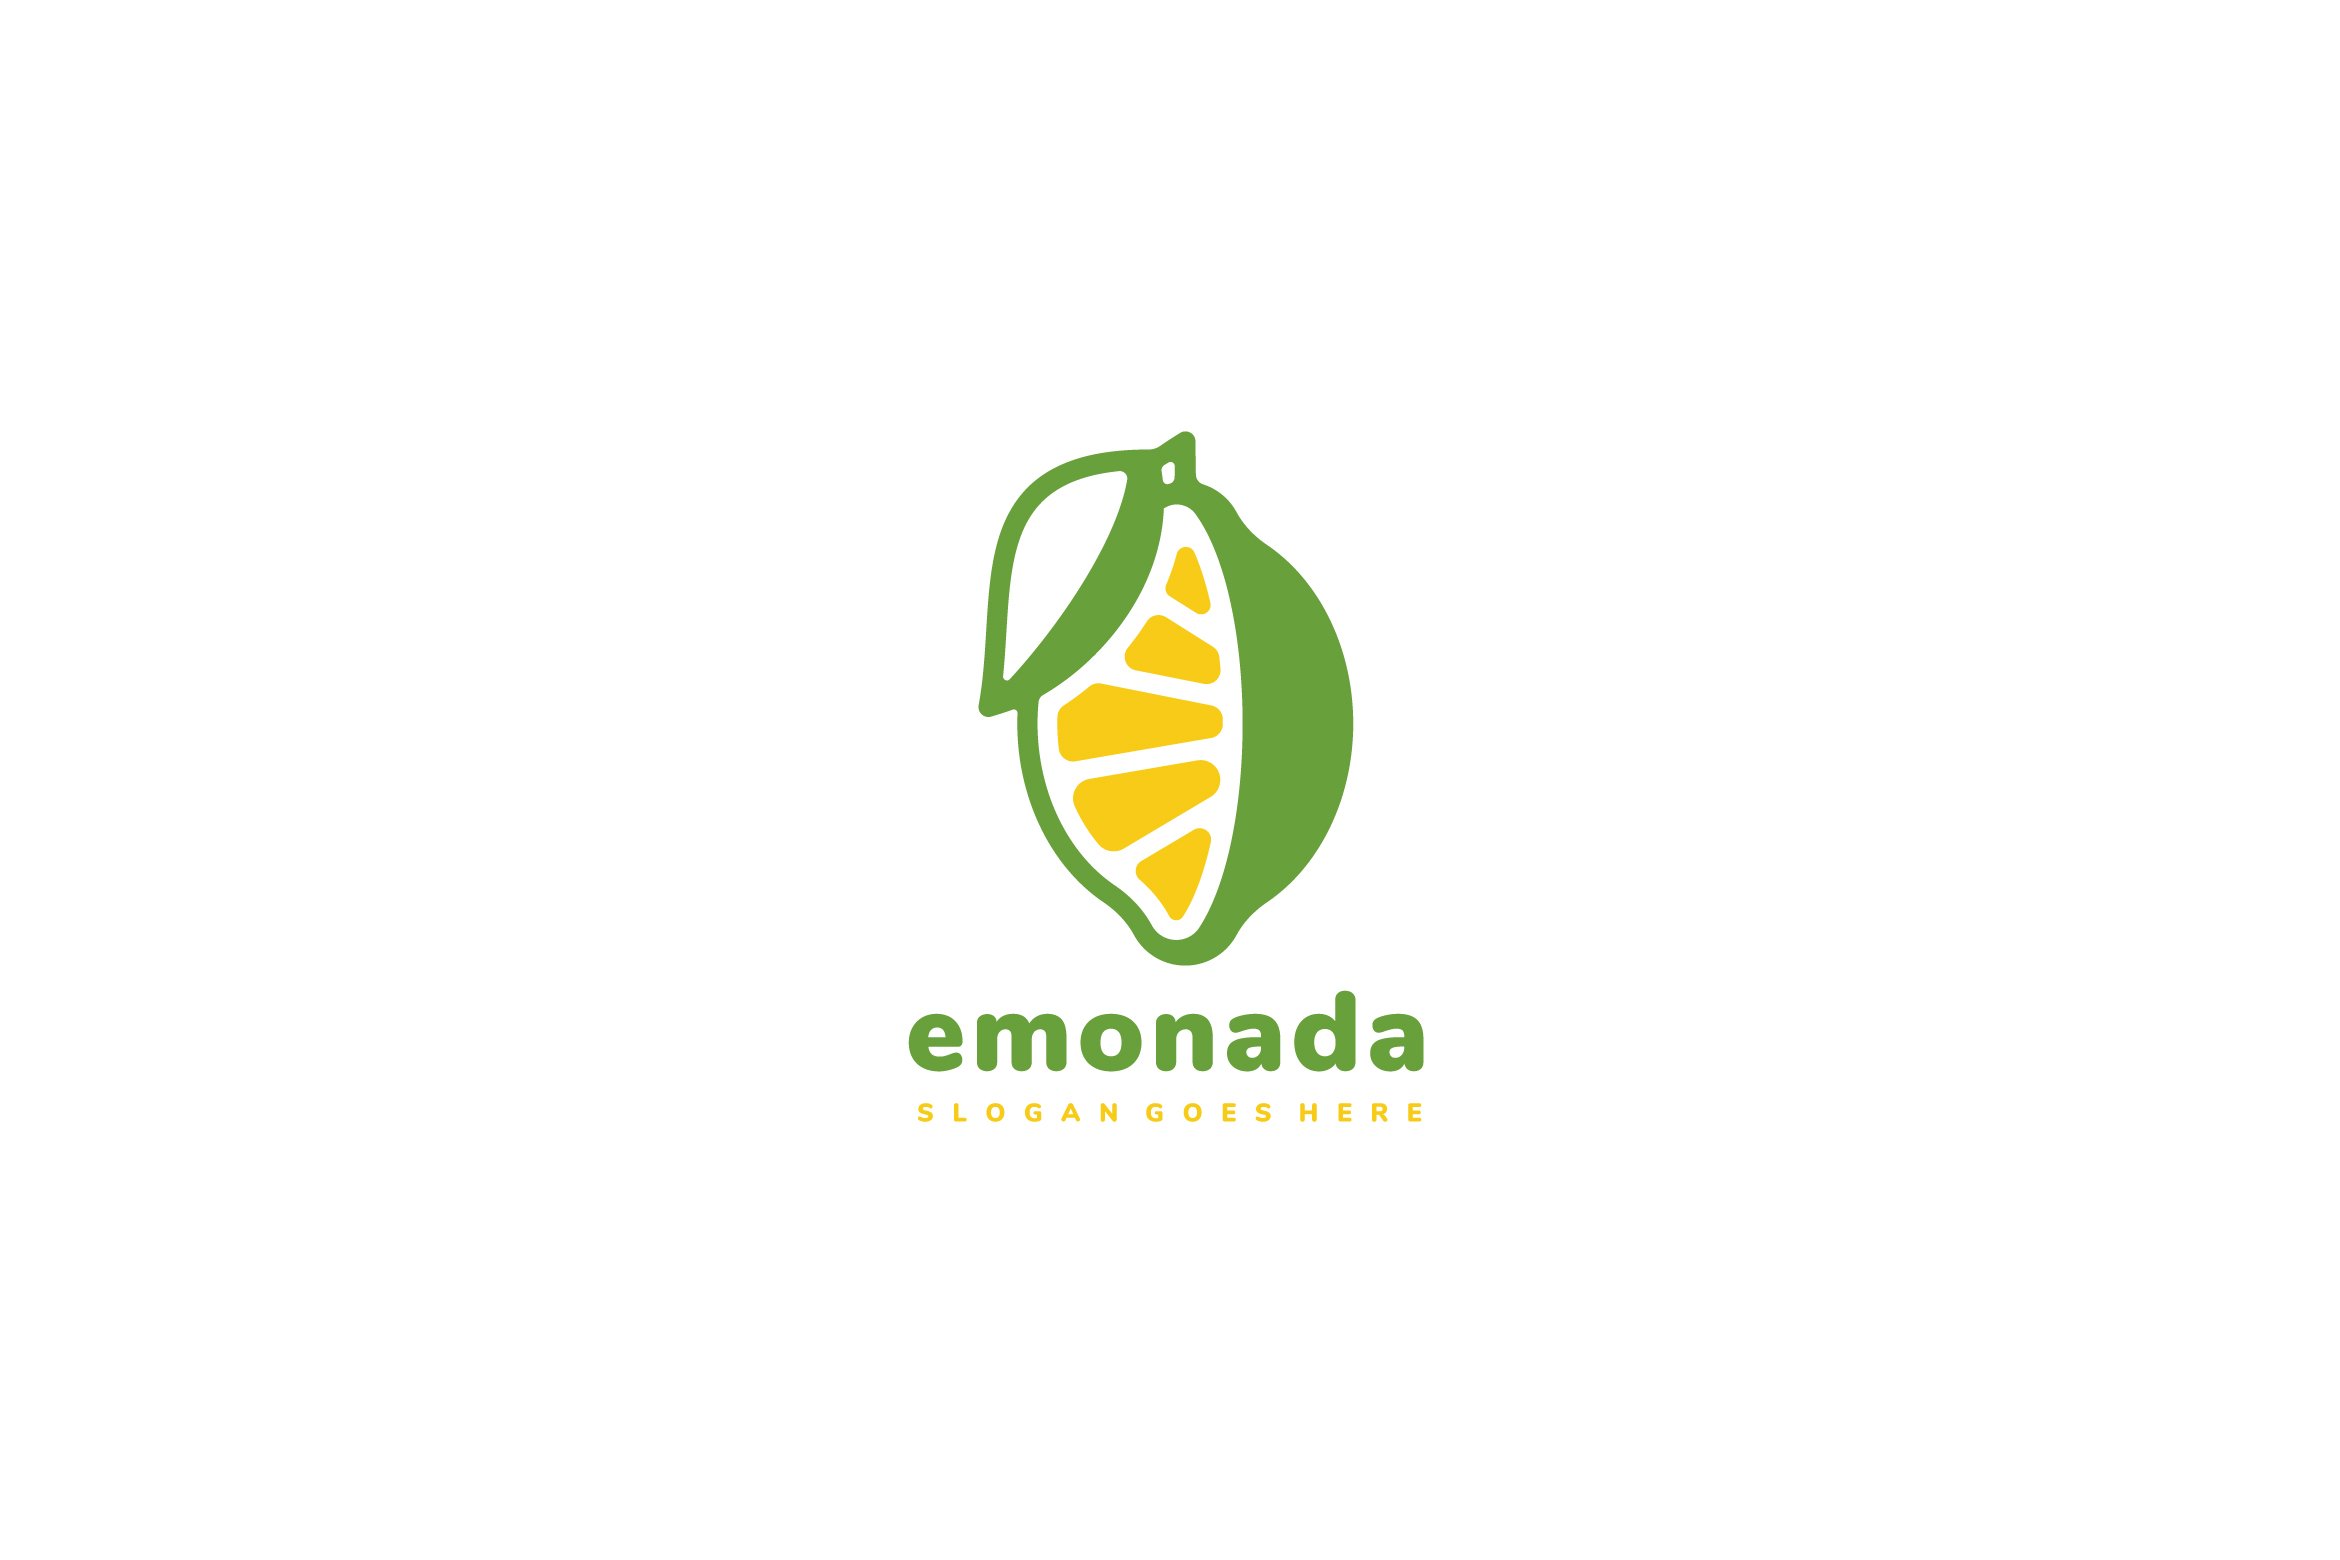 Lemon Fruit Logo cover image.